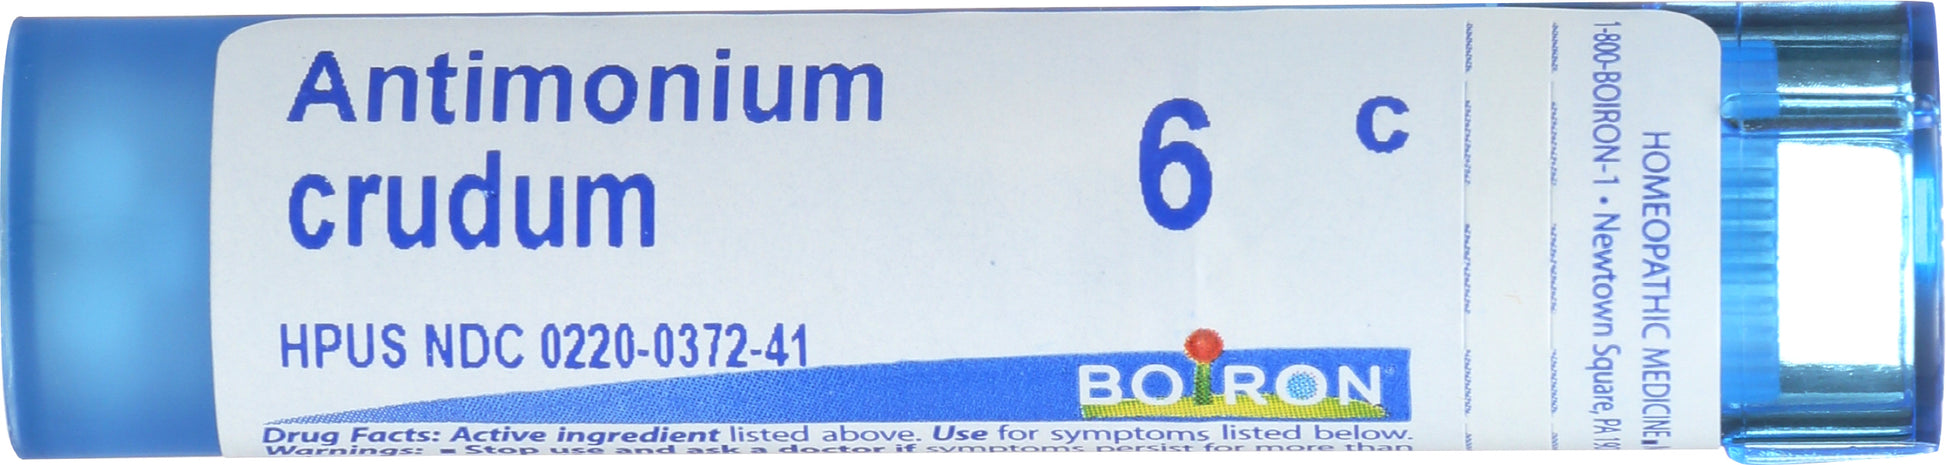 Boiron Antimonium crudum 6c